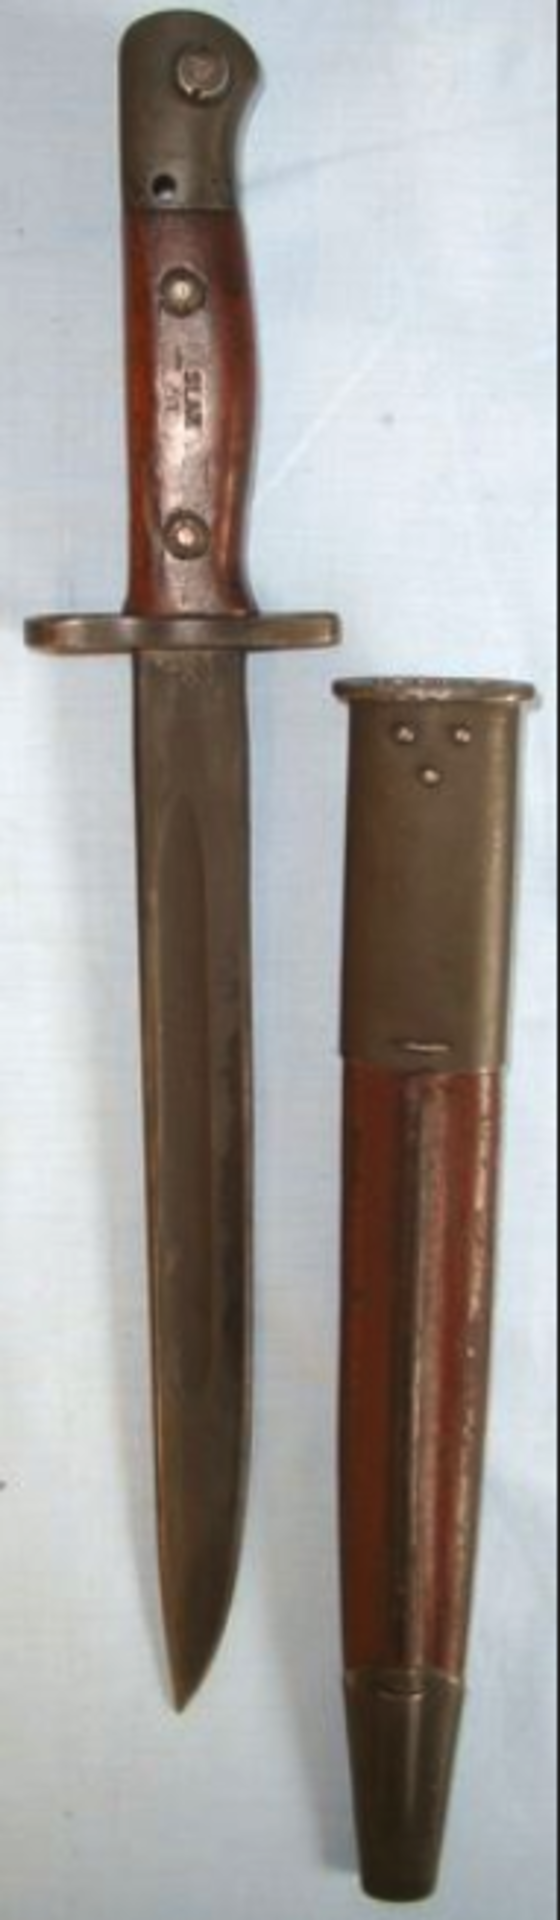 Australian WW2 & Korea Era Owen Machine Gun Bayonet & WW2 1944 Dated Scabbard. - Image 3 of 3